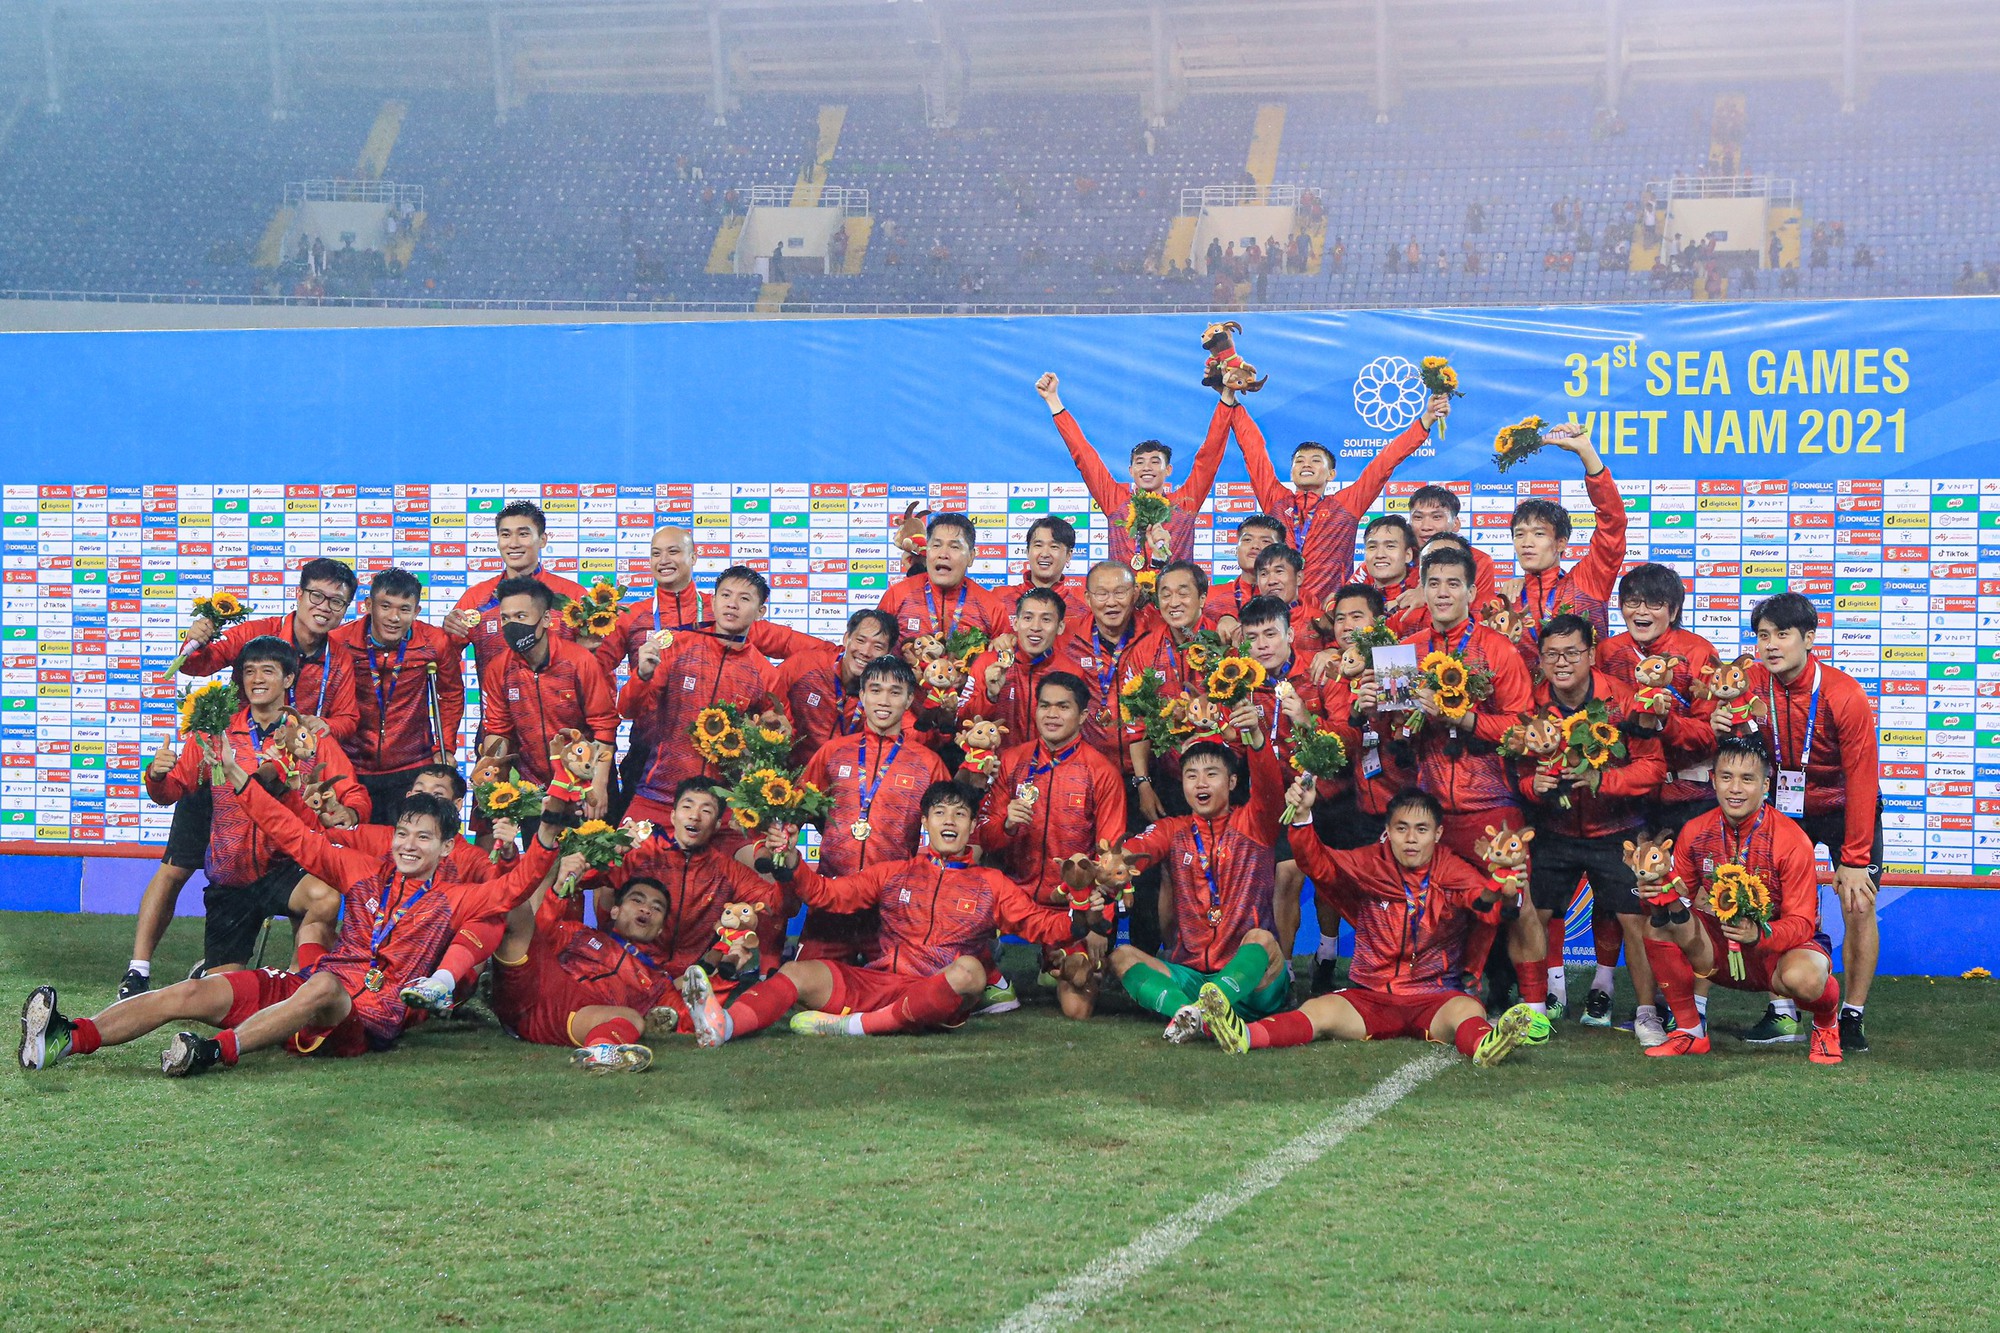 Cùng chúc mừng Đội tuyển bóng đá nam U23 Việt Nam đạt được thành tích xuất sắc tại giải Thường Châu. Hãy xem thư chúc mừng đầy xúc động của những người hâm mộ và cổ vũ cho các cầu thủ tài năng của đội bóng!